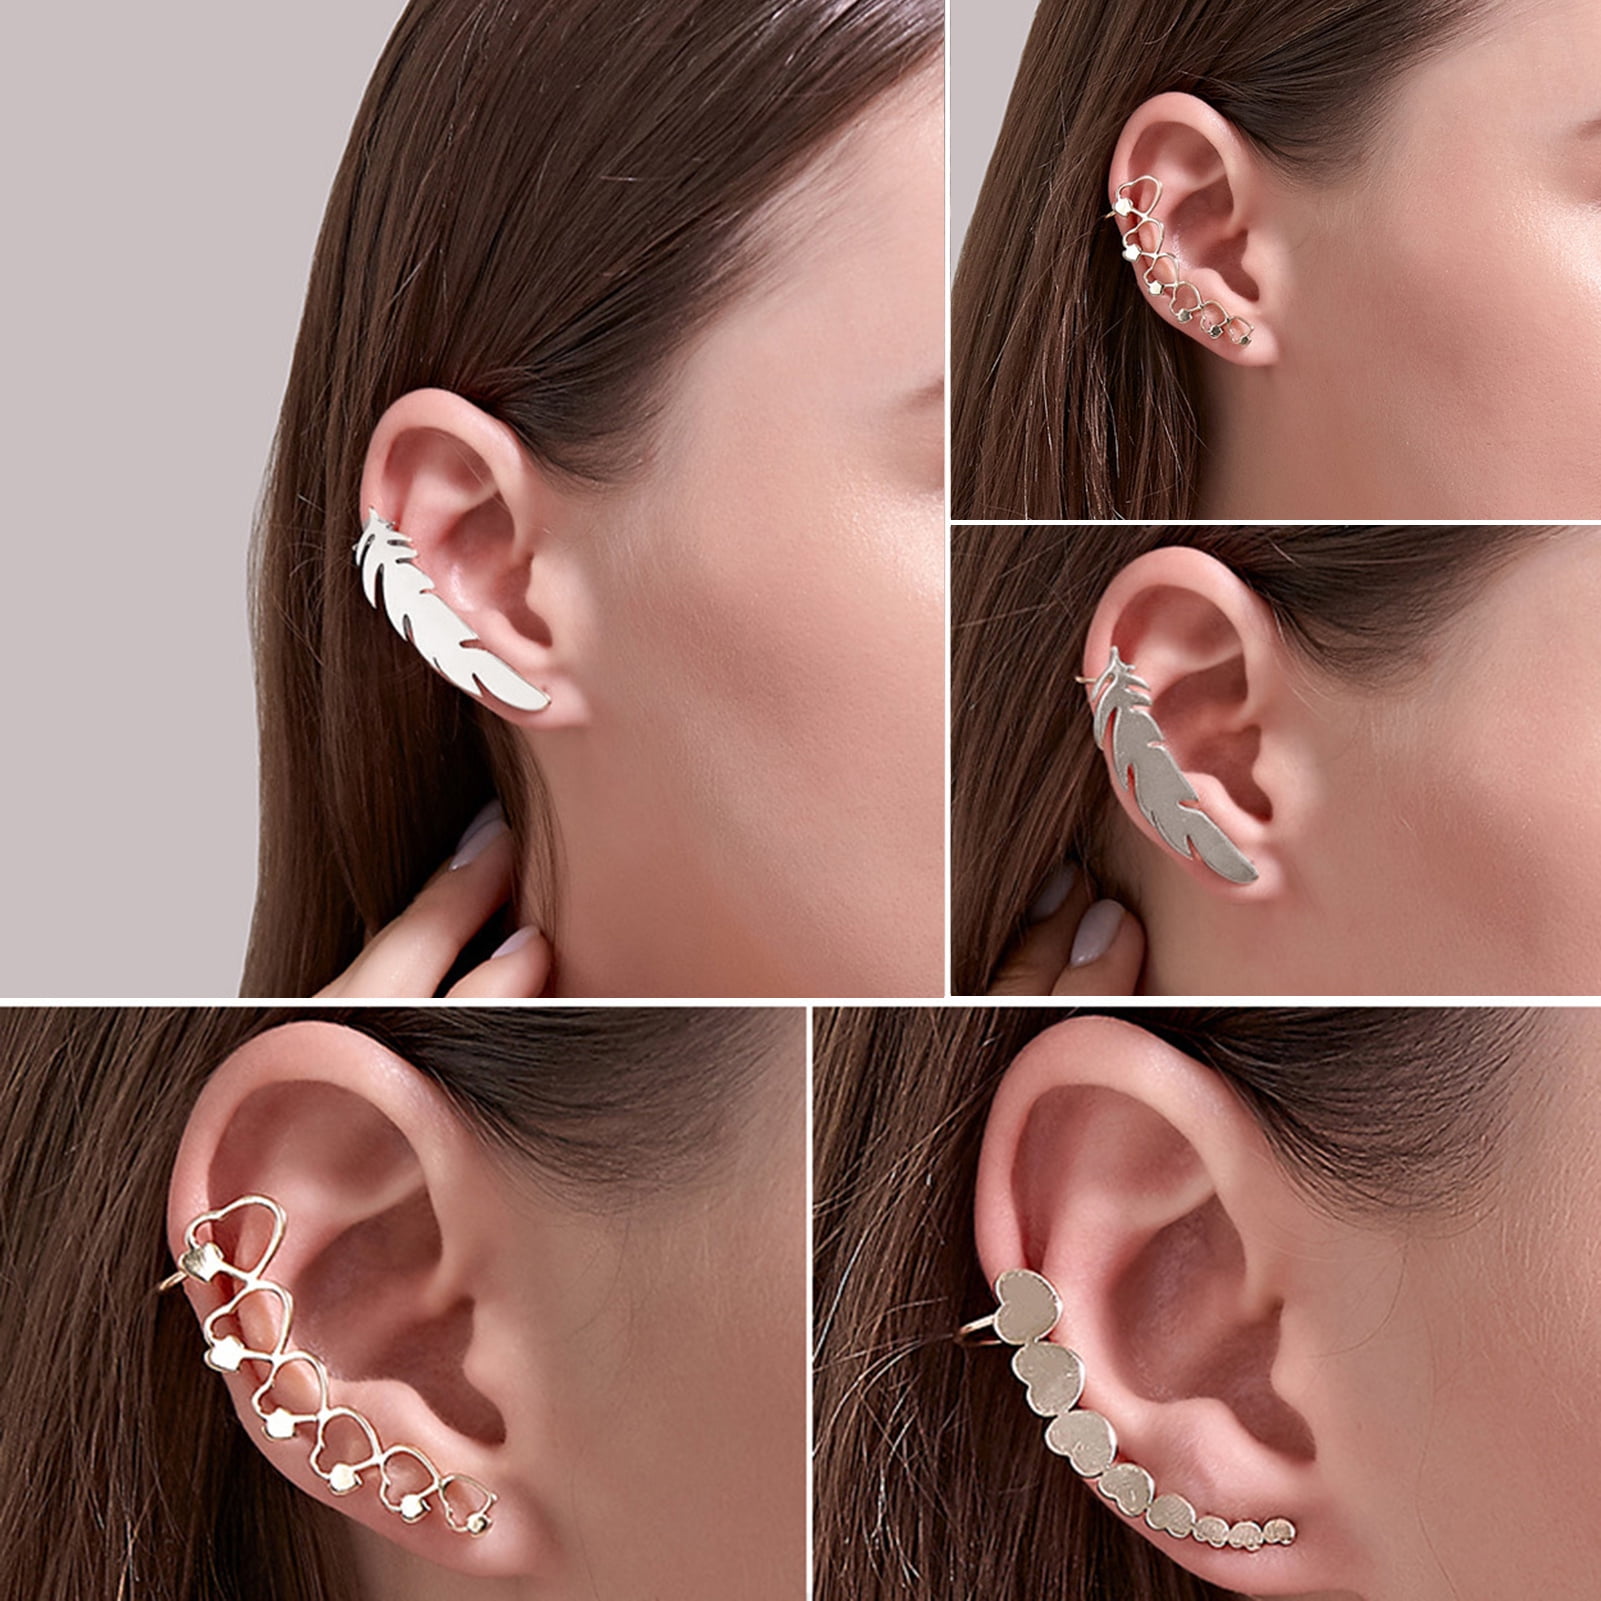 Stylish Silver Ear Cuff - Earrings - FOLKWAYS